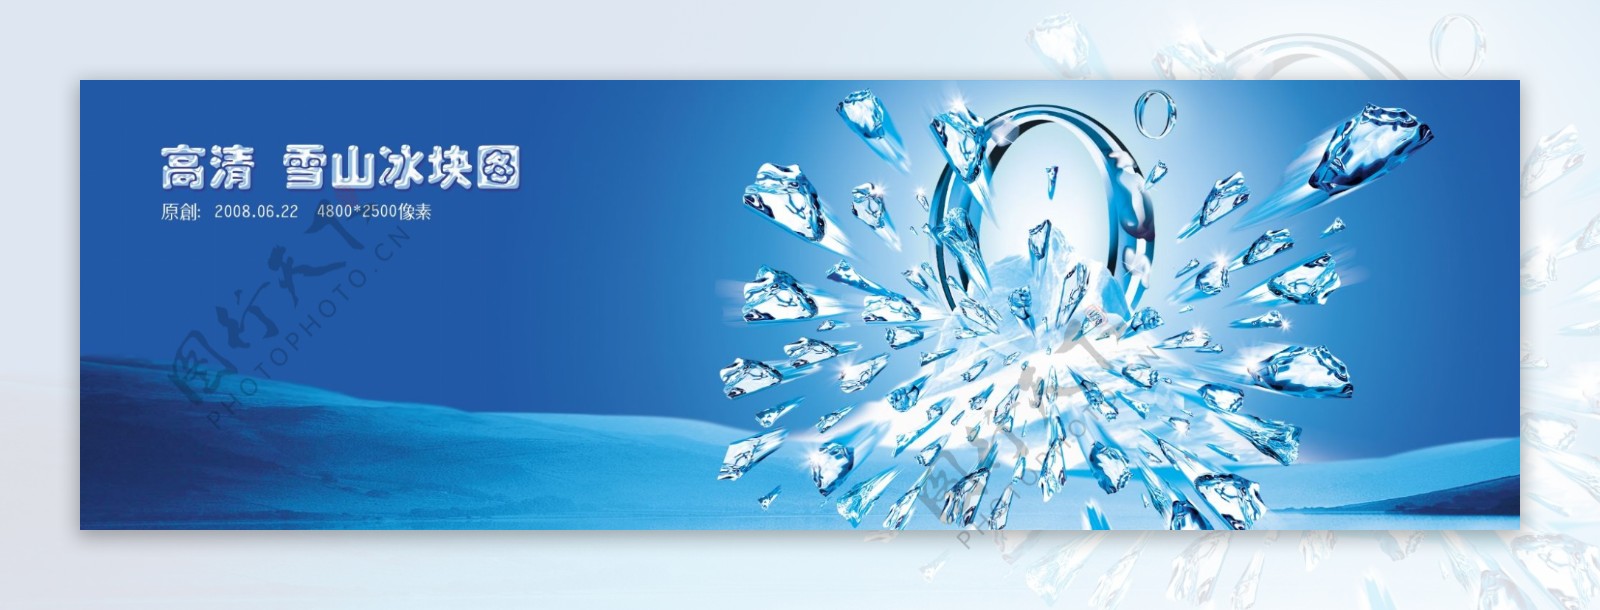 龙腾广告平面广告PSD分层素材源文件设计元素类冰块海水水平面水滴戒指